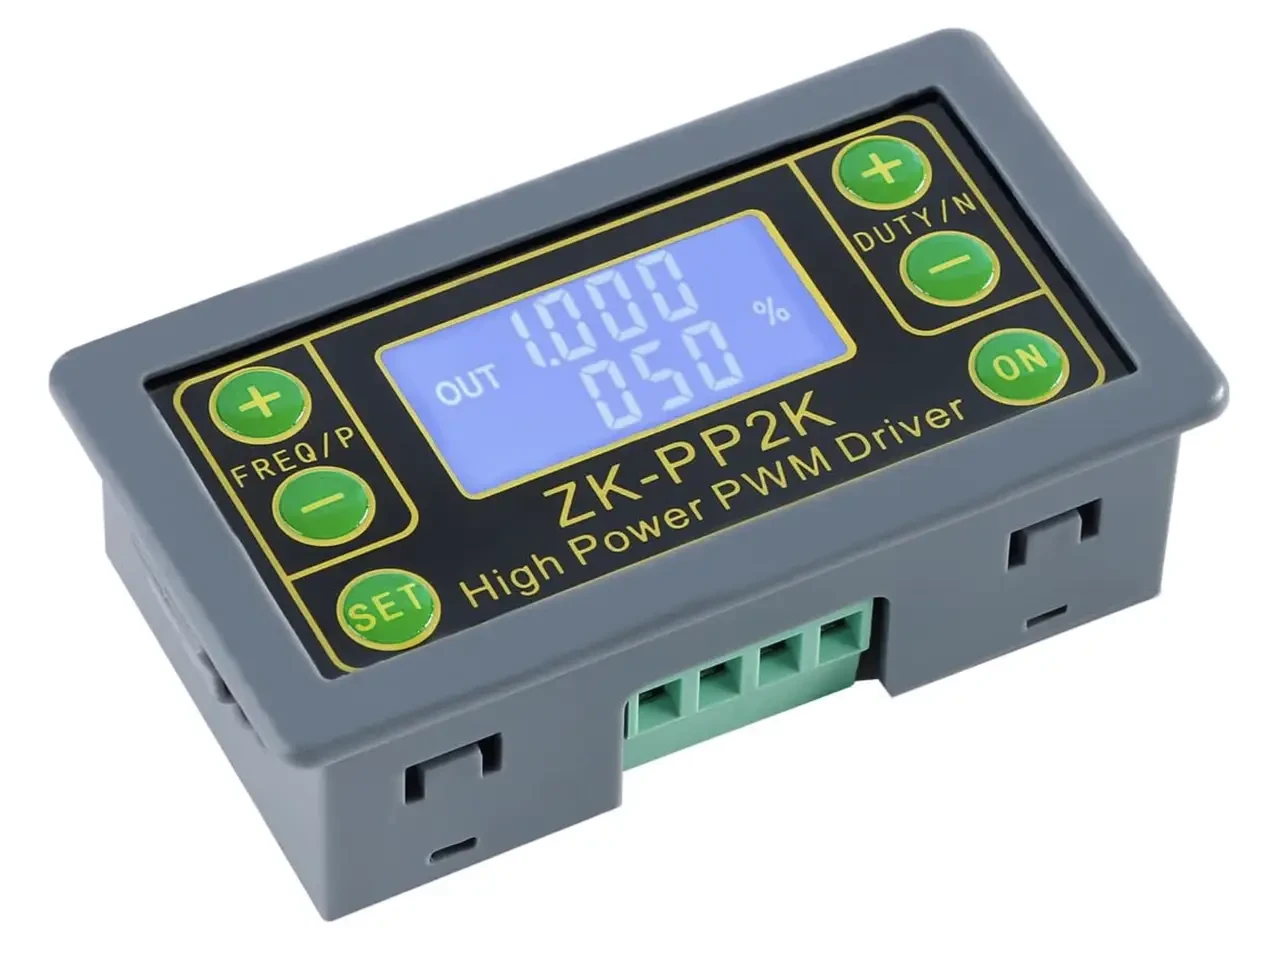 Генератор ШІМ сигналів ZK-PP2K зі зміною частоти та робочого циклу, можливість встановлення часу затримки